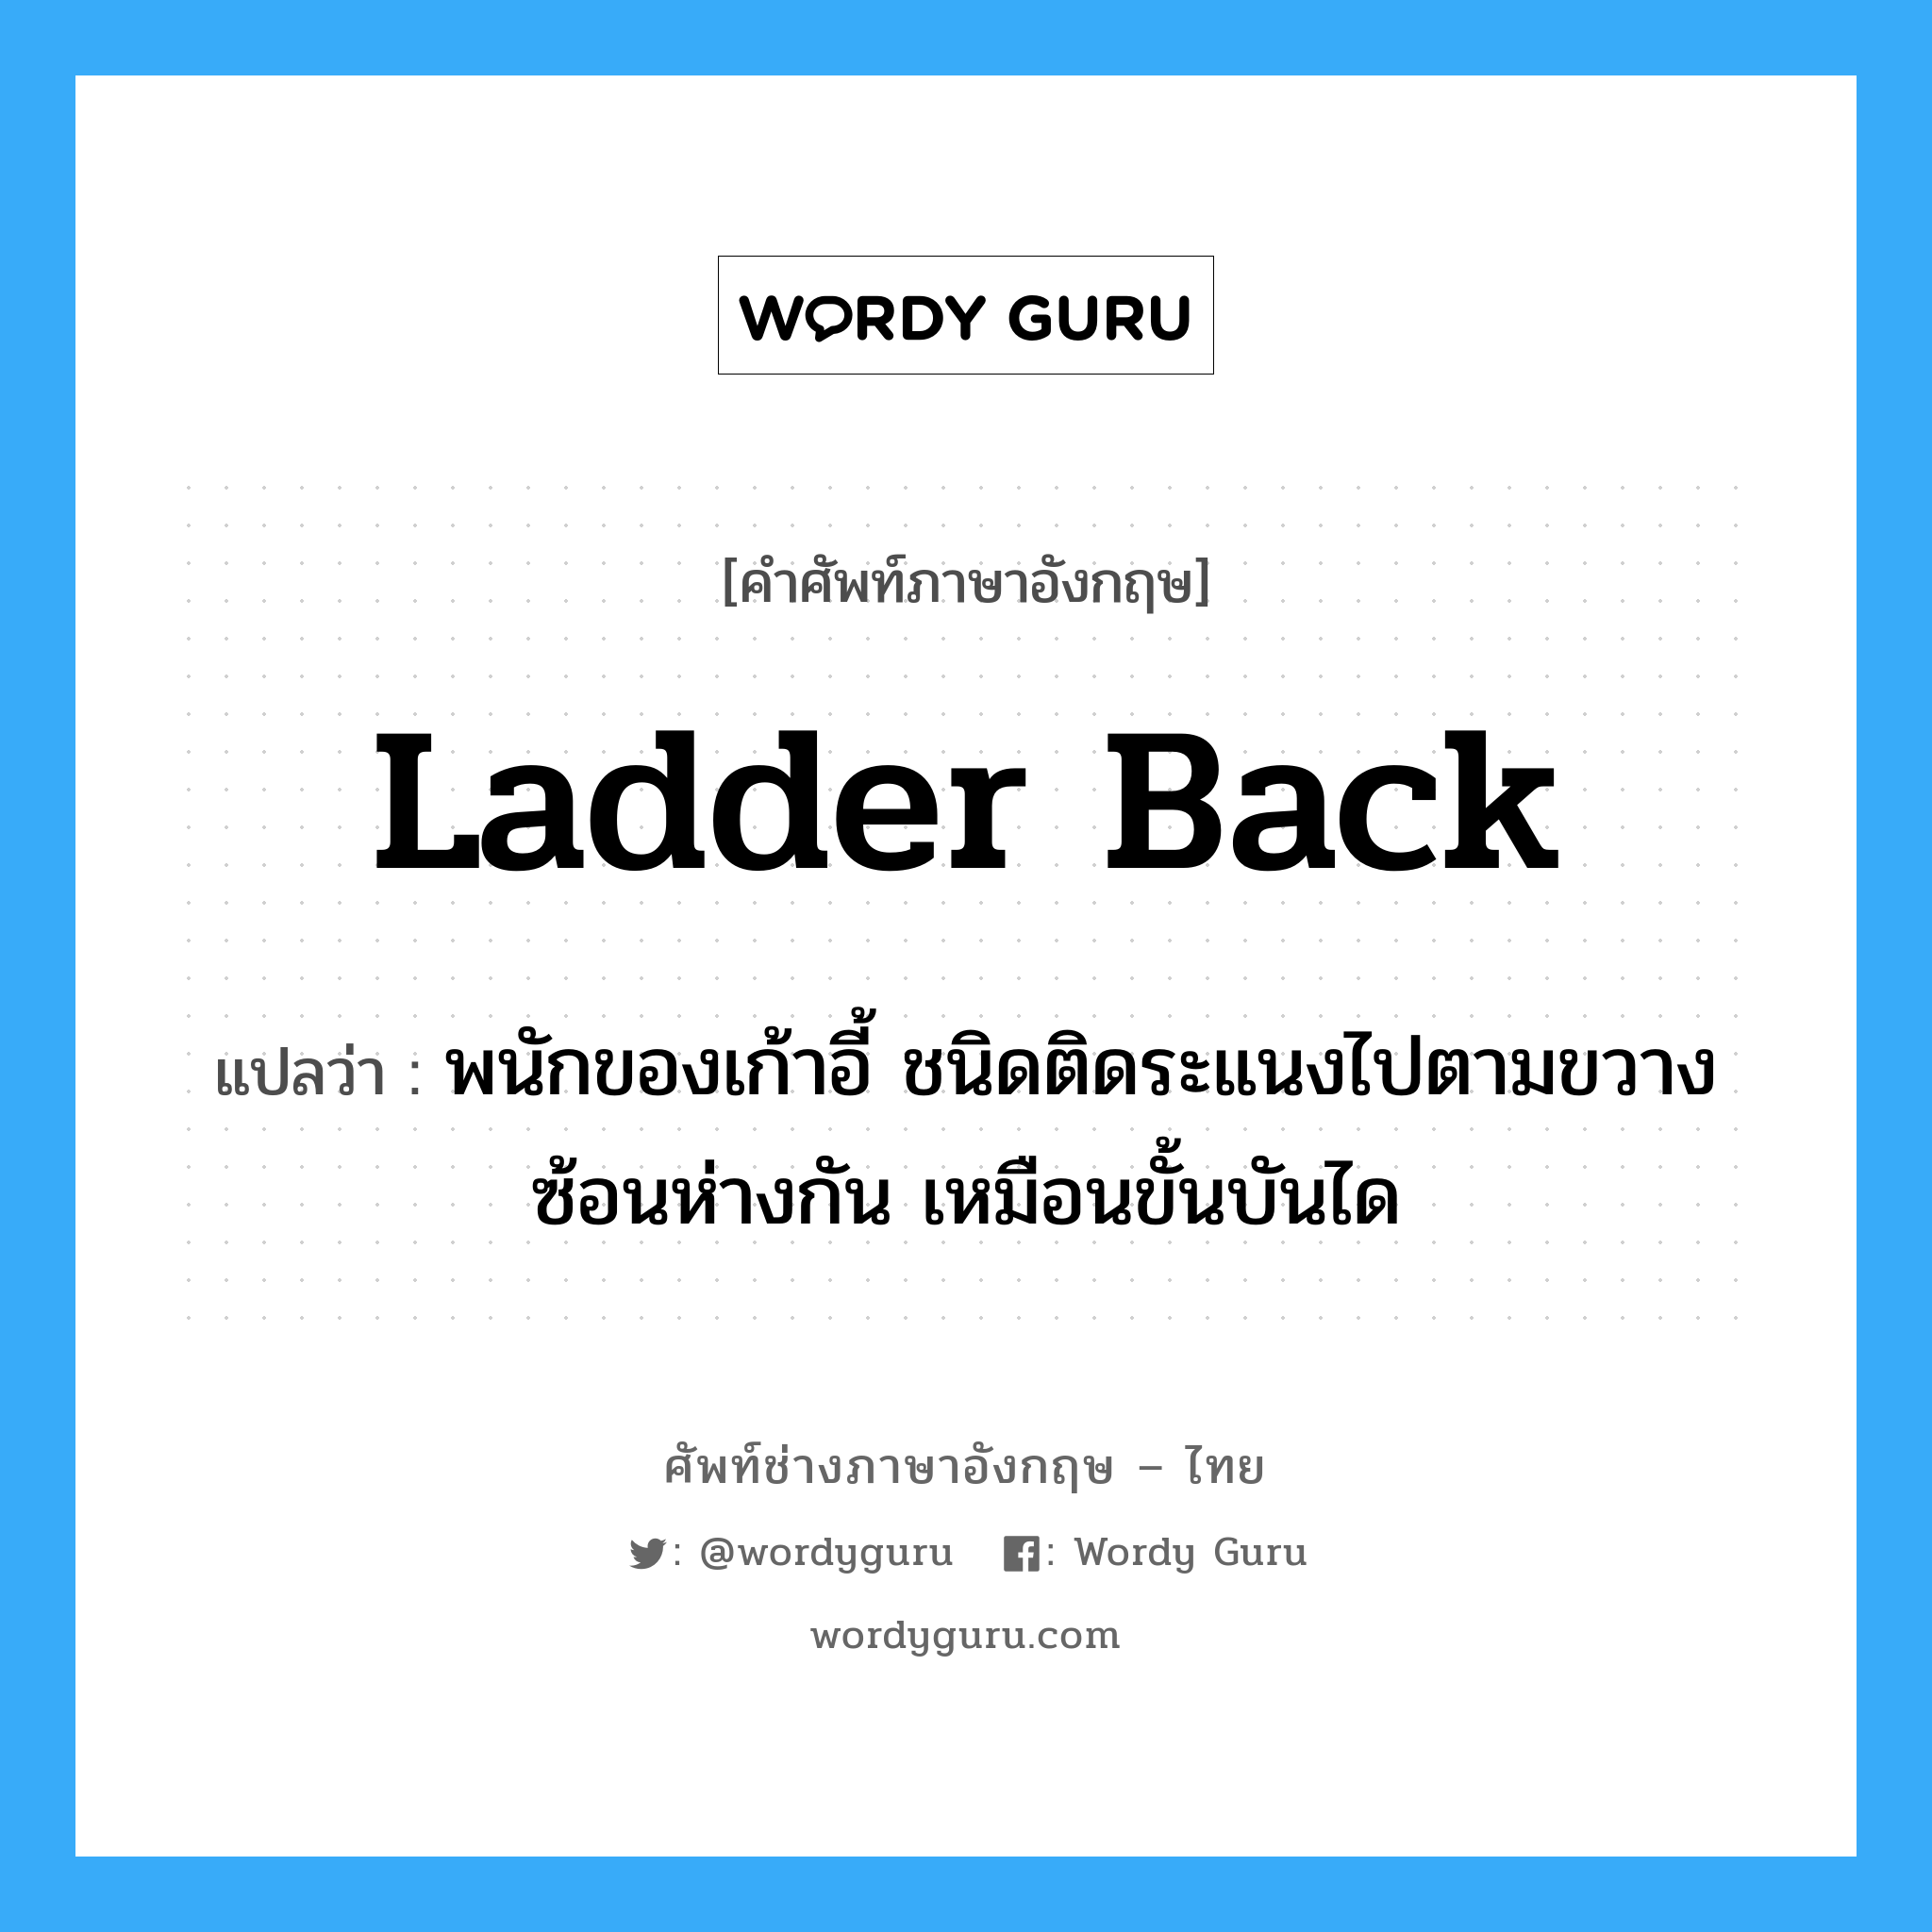 ladder back แปลว่า?, คำศัพท์ช่างภาษาอังกฤษ - ไทย ladder back คำศัพท์ภาษาอังกฤษ ladder back แปลว่า พนักของเก้าอี้ ชนิดติดระแนงไปตามขวางซ้อนห่างกัน เหมือนขั้นบันได